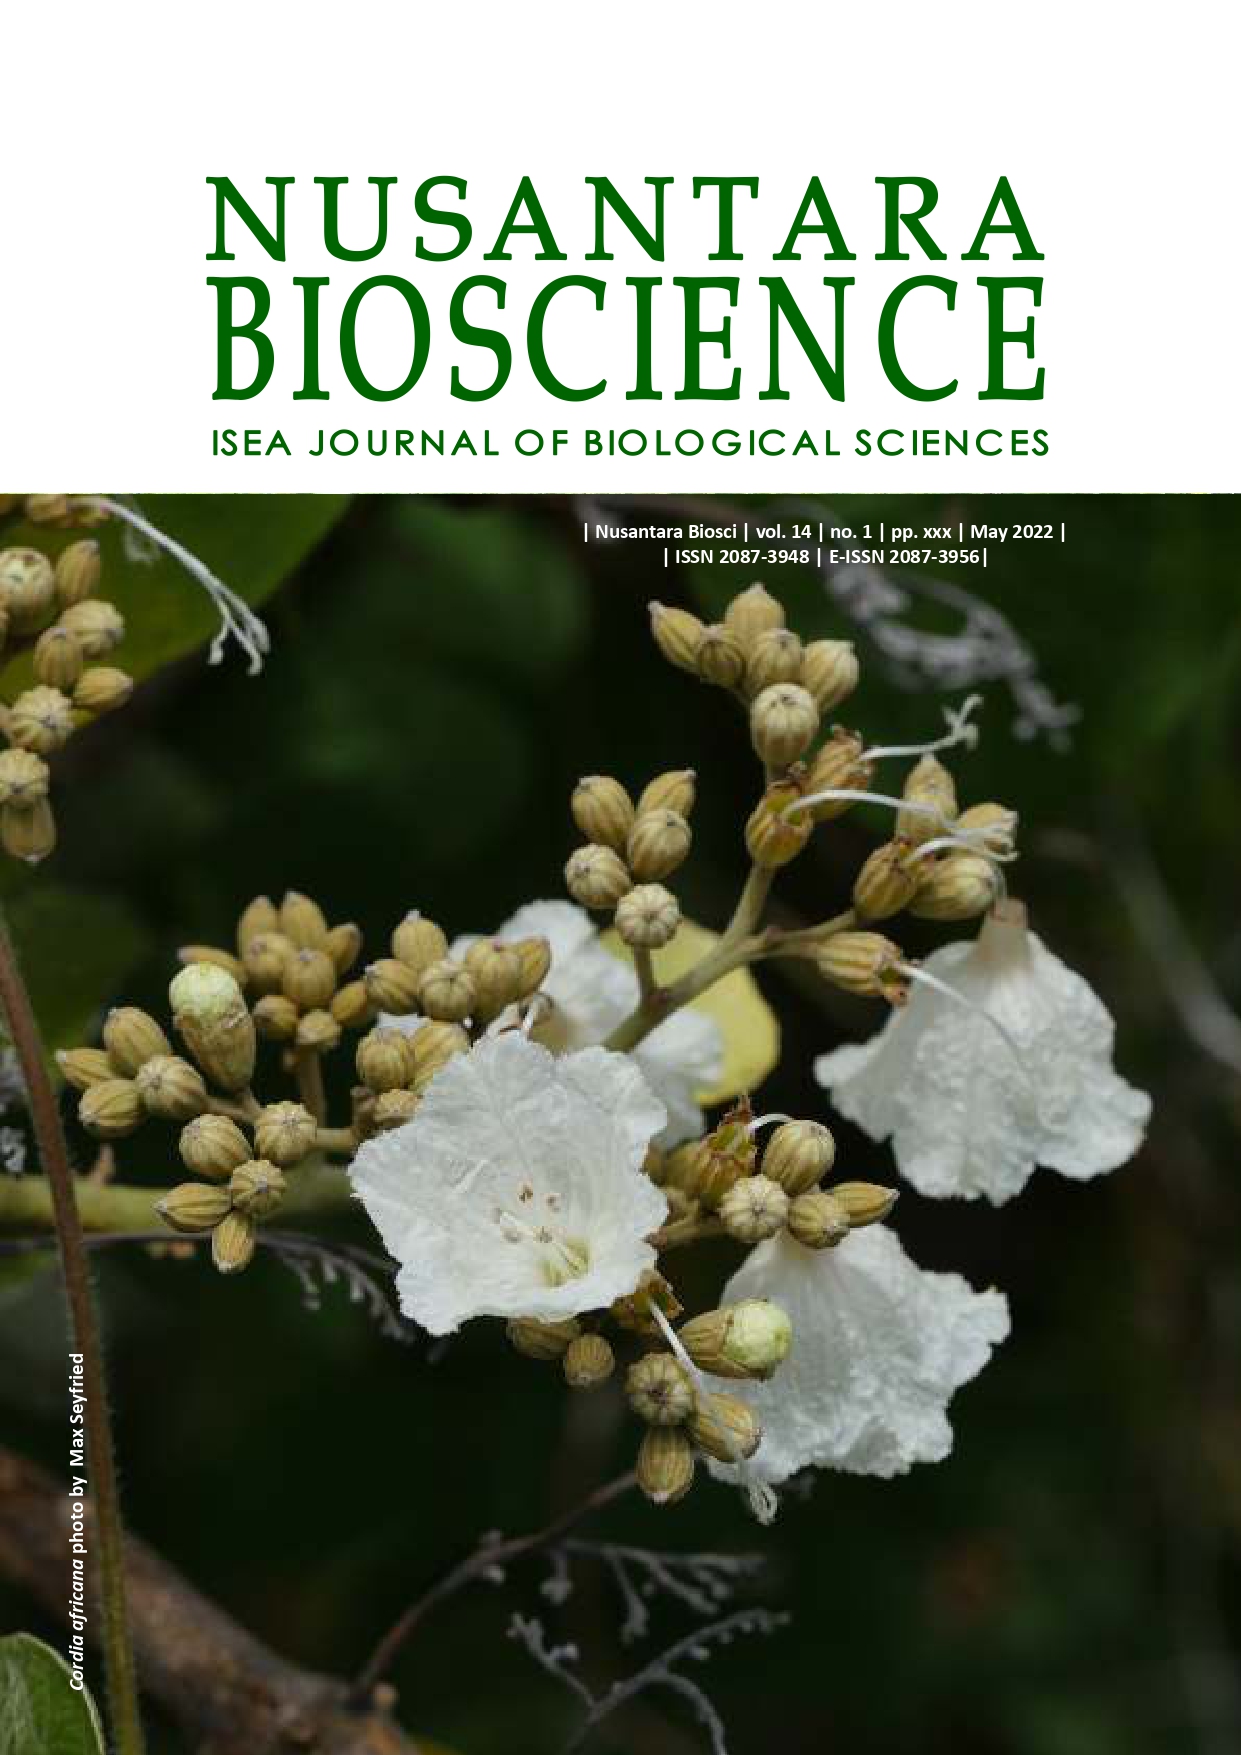 Nusantara Bioscience